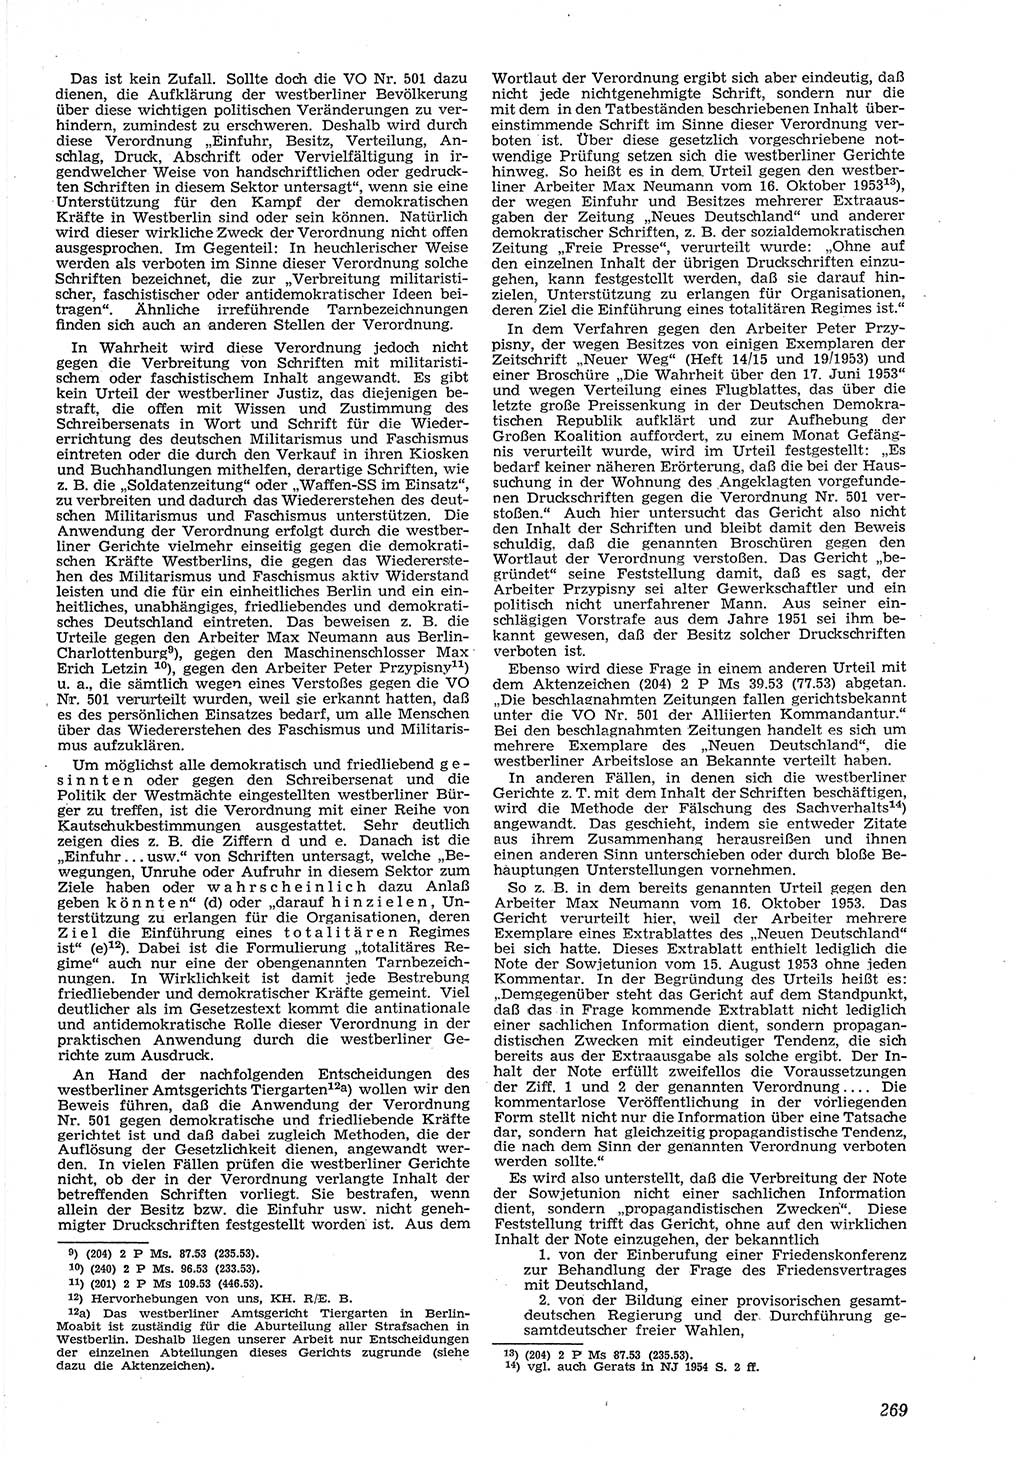 Neue Justiz (NJ), Zeitschrift für Recht und Rechtswissenschaft [Deutsche Demokratische Republik (DDR)], 8. Jahrgang 1954, Seite 269 (NJ DDR 1954, S. 269)